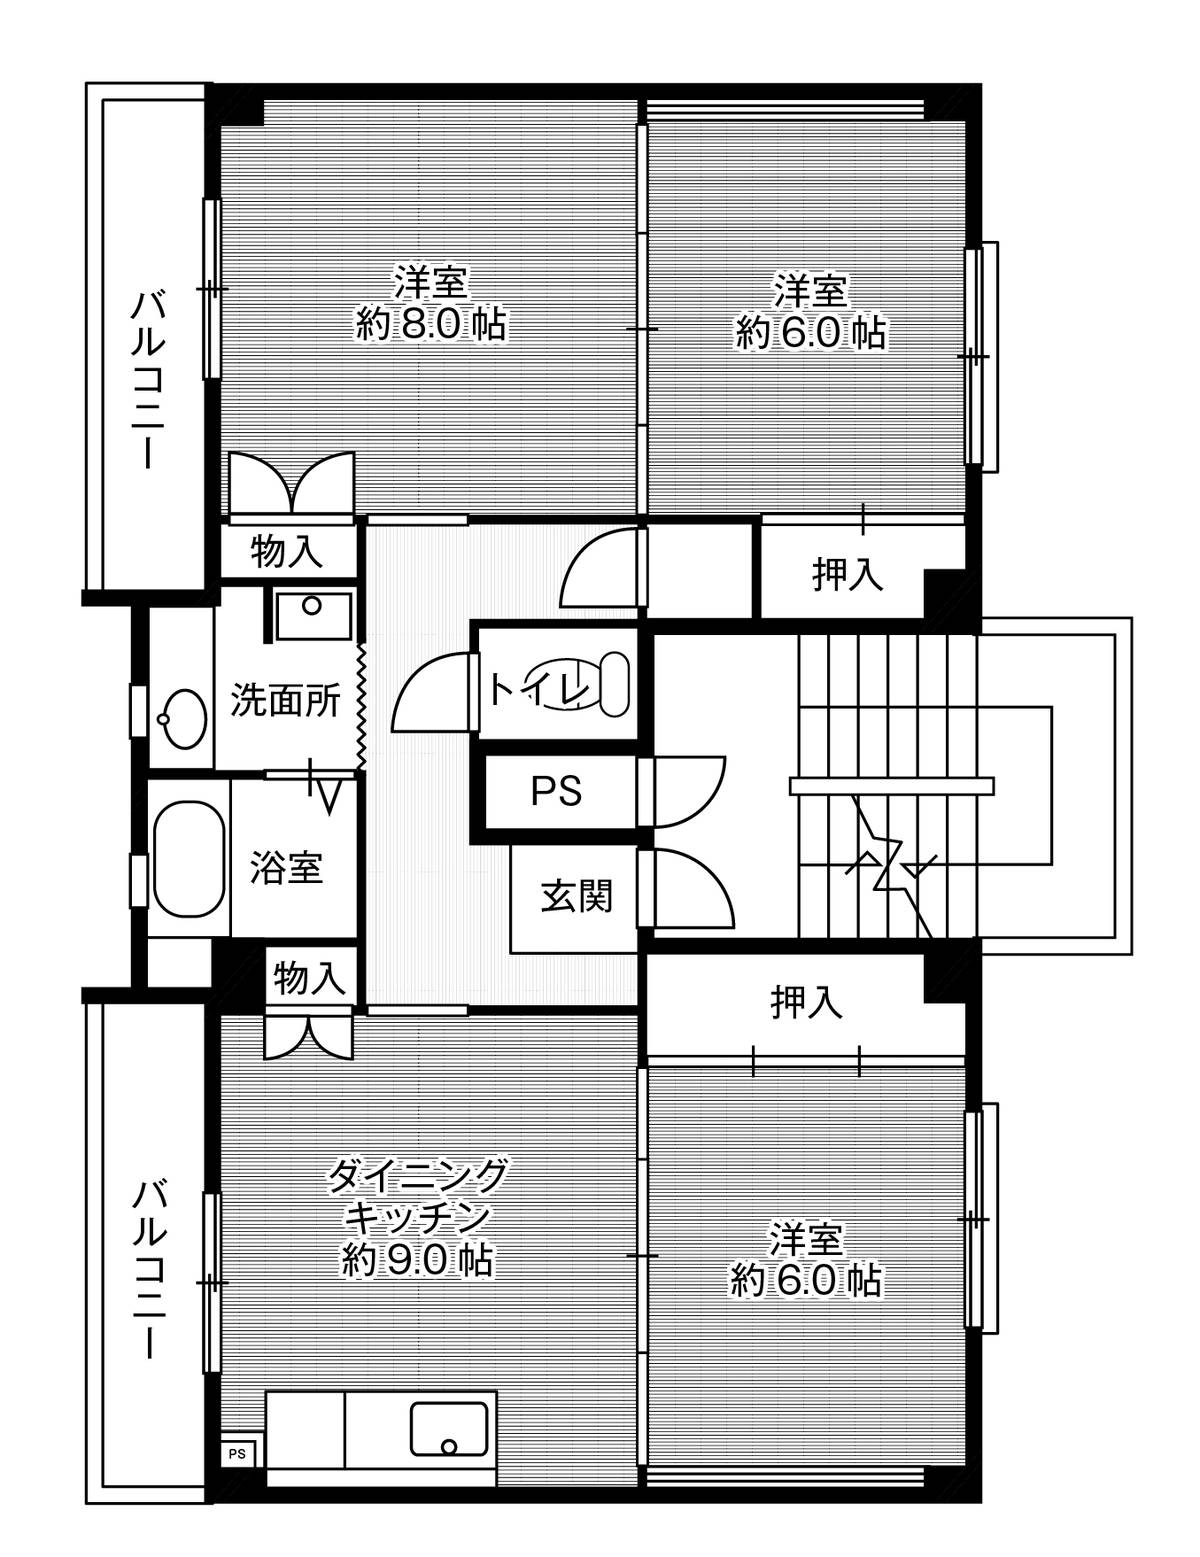 Sơ đồ phòng 3DK của Village House Ishinomaki ở Toyohashi-shi